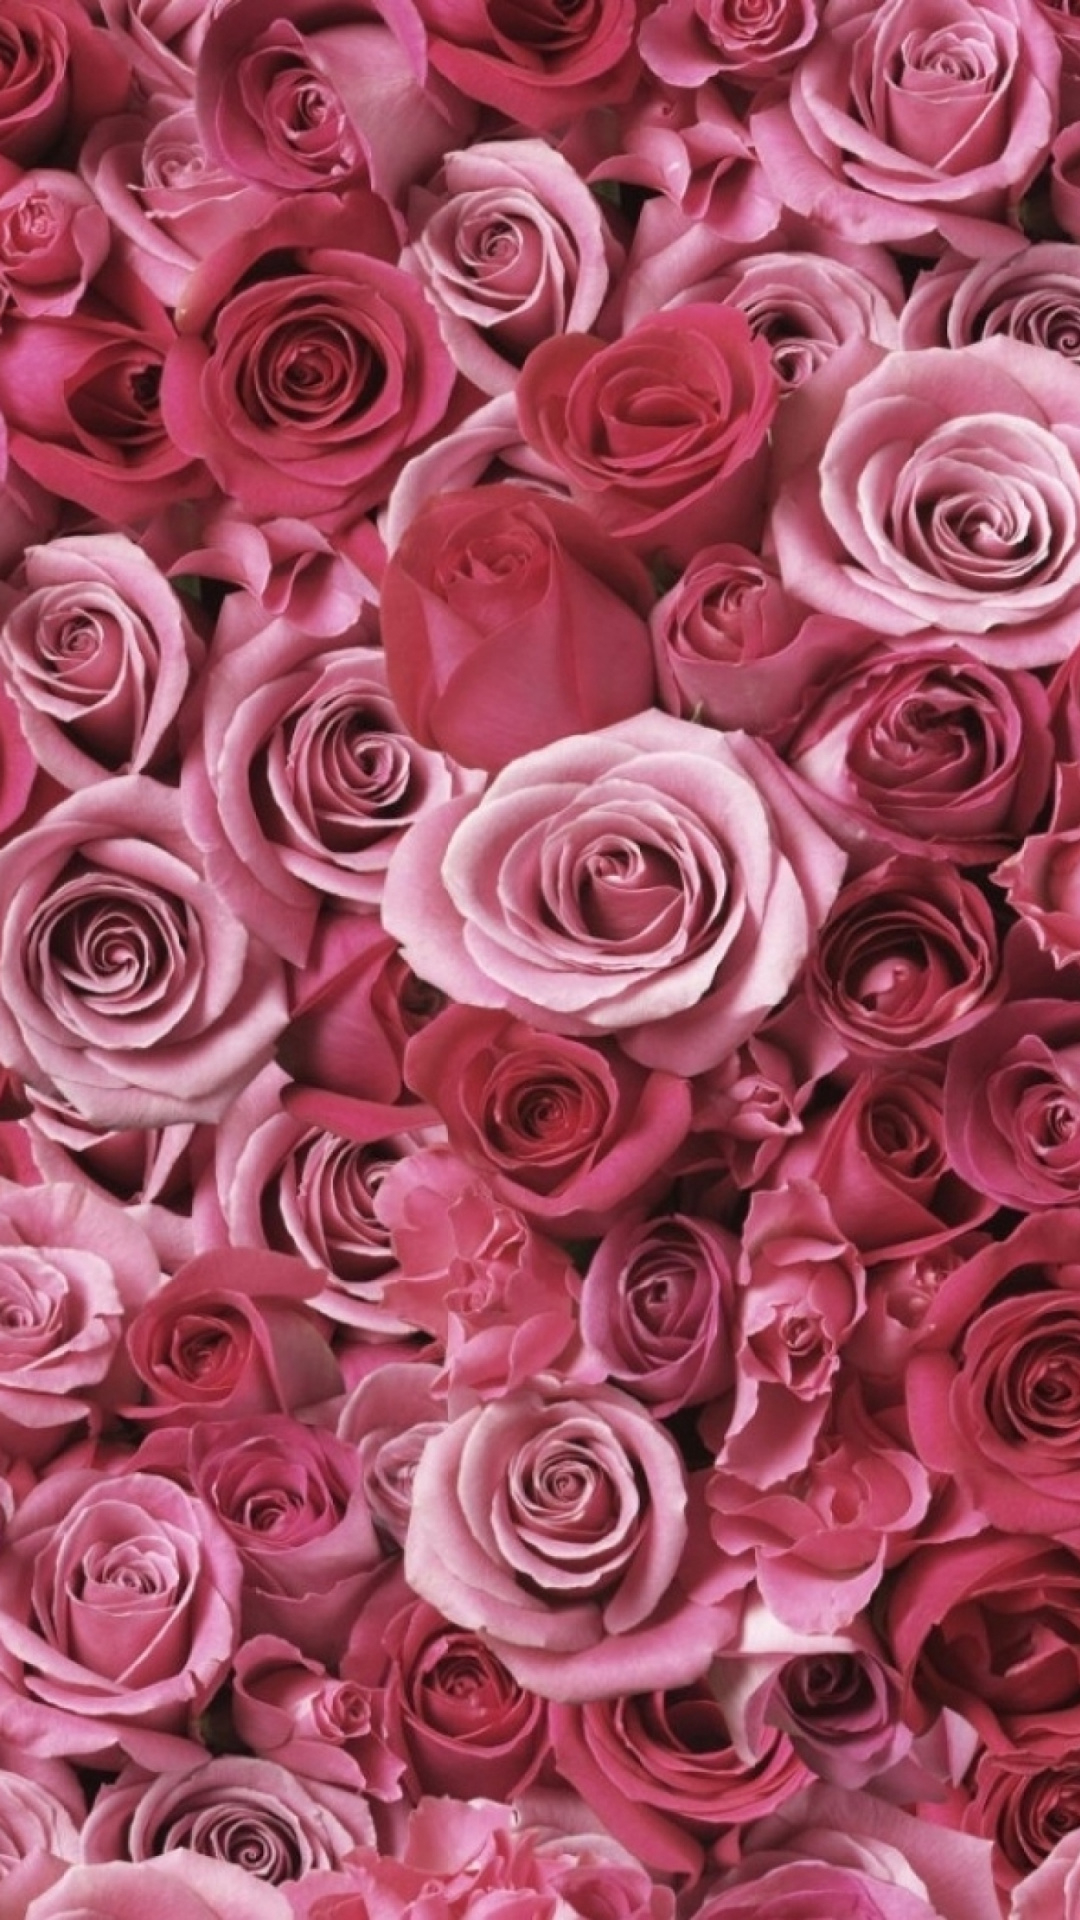 Black, Rose, Cut Flowers, Rose Family, Flower Wallpaper - Hd Rose Wallpaper For Android , HD Wallpaper & Backgrounds